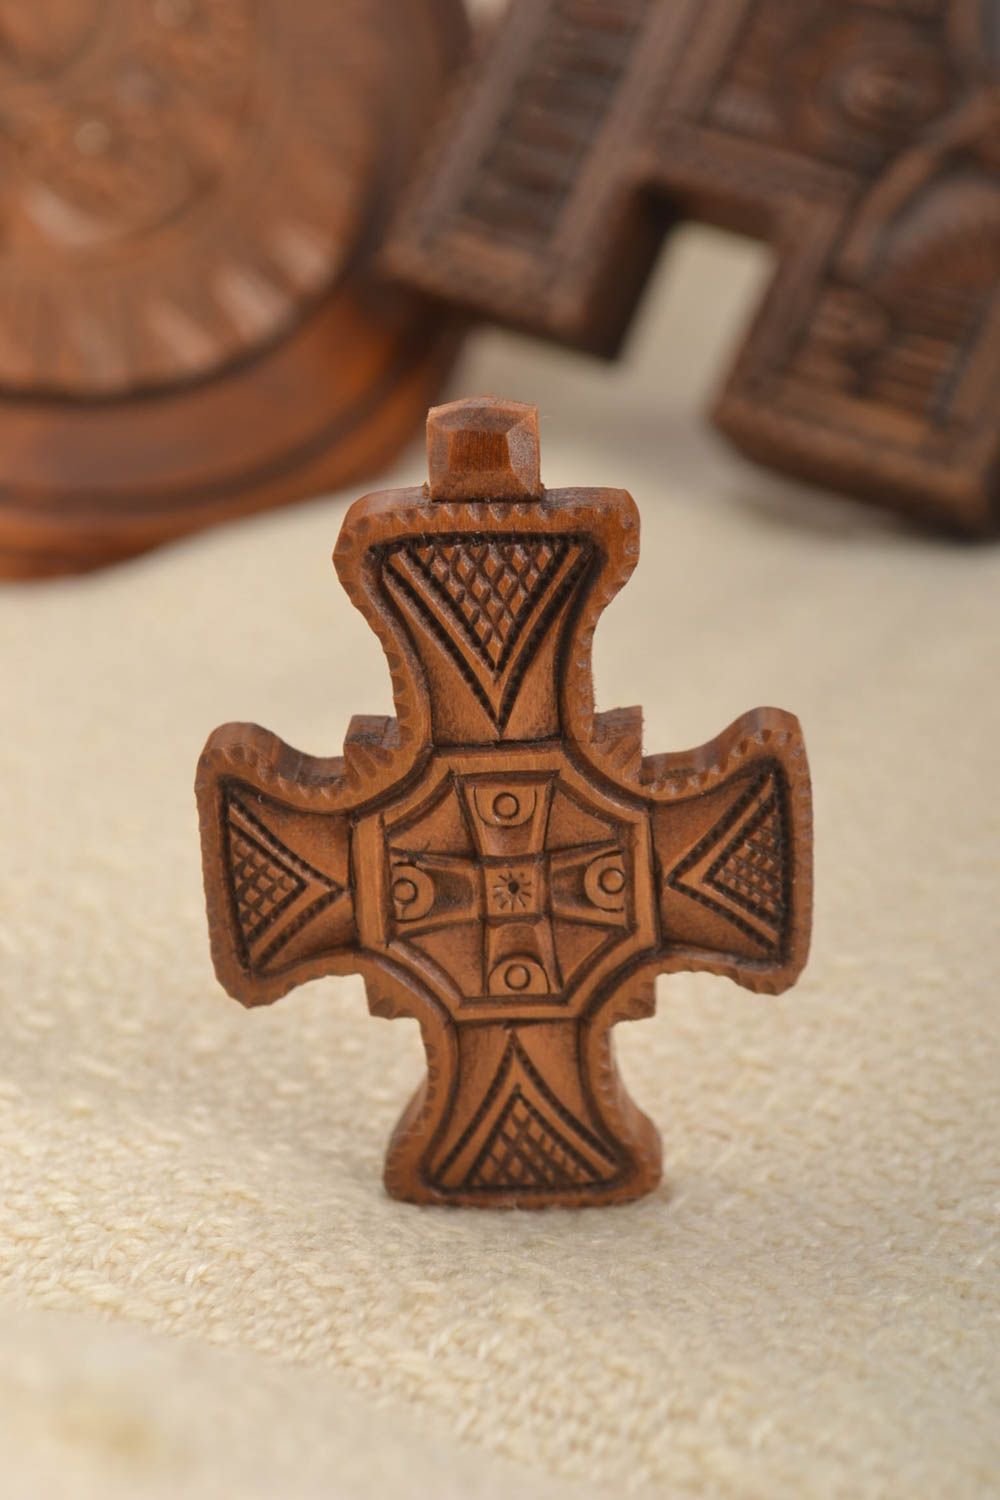 Резной крест ручной работы нательный крестик деревянный крестик покрытый лаком фото 1